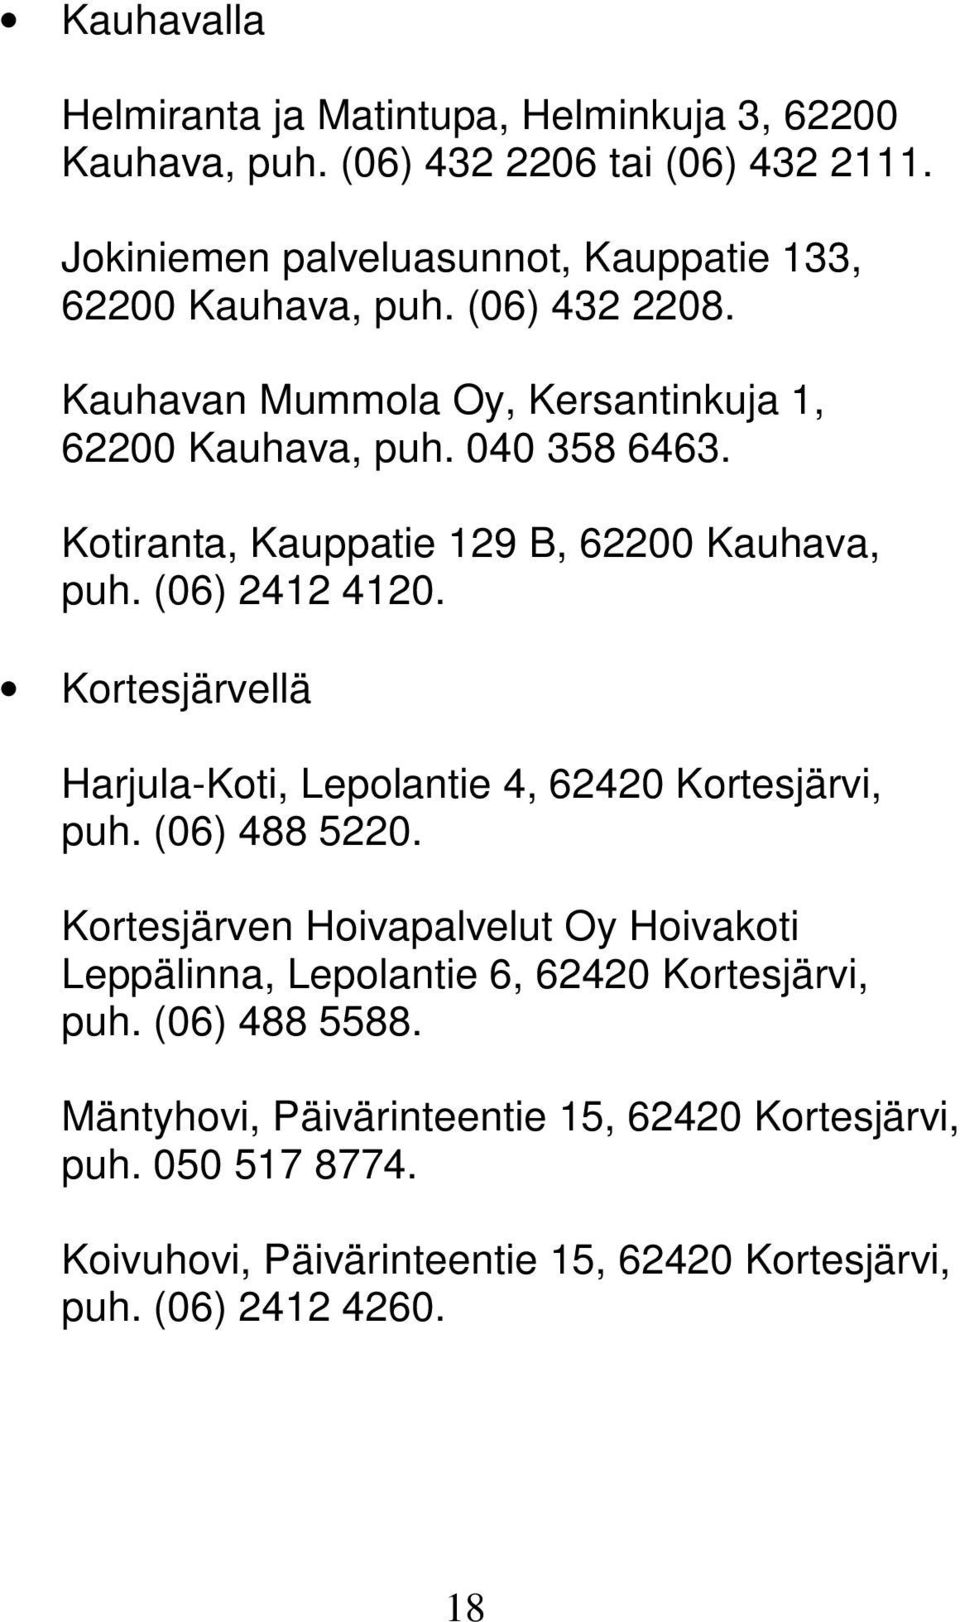 Kotiranta, Kauppatie 129 B, 62200 Kauhava, puh. (06) 2412 4120. Kortesjärvellä Harjula-Koti, Lepolantie 4, 62420 Kortesjärvi, puh. (06) 488 5220.